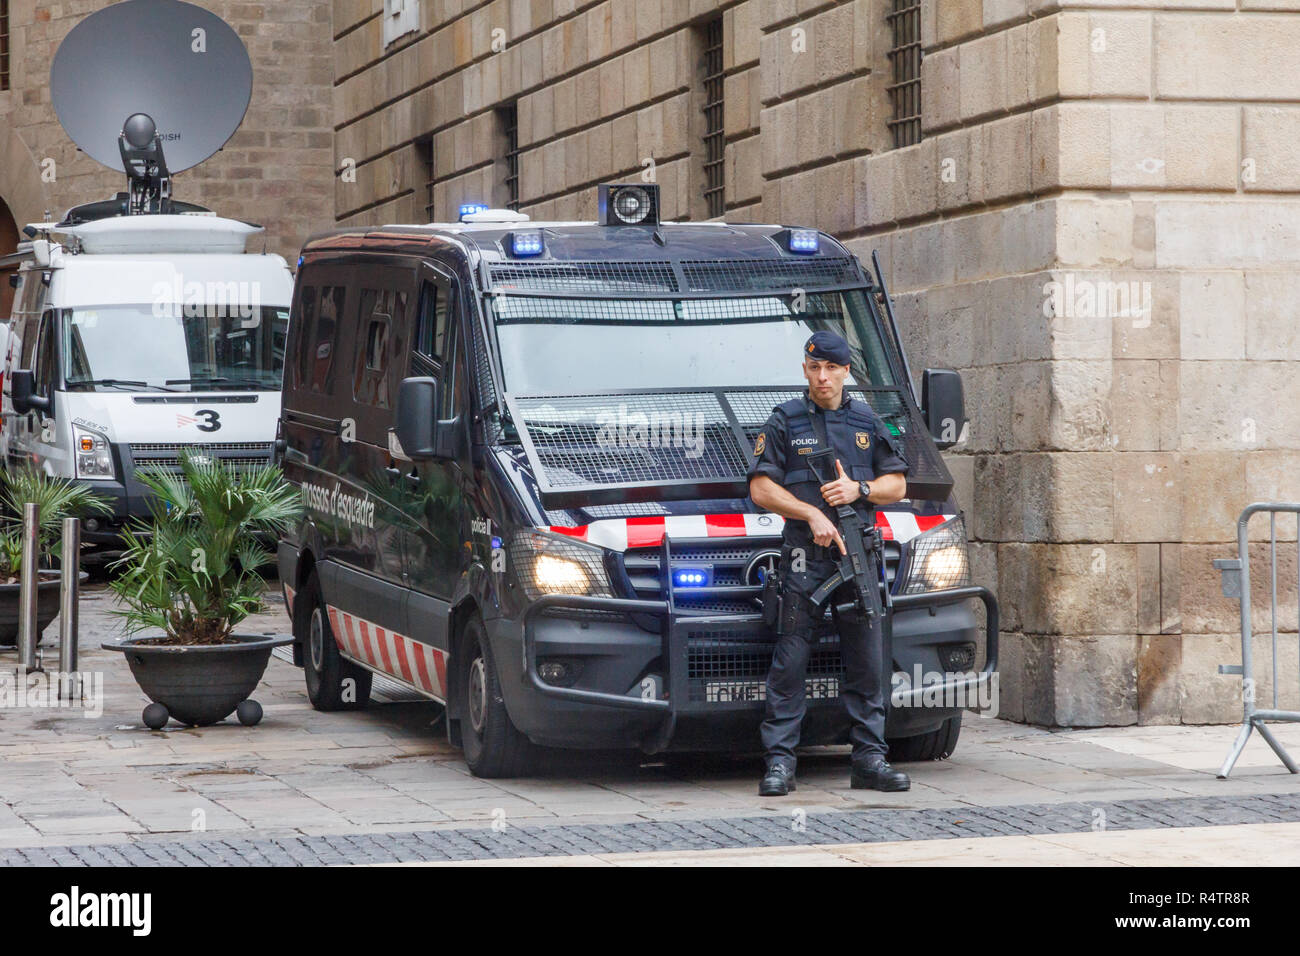 Barcelone, Espagne - 4 octobre 2017 : policier à l'arme automatique se tenait en face de fourgon de police. Principales villes d'Espagne sont en alerte pour terrori Banque D'Images